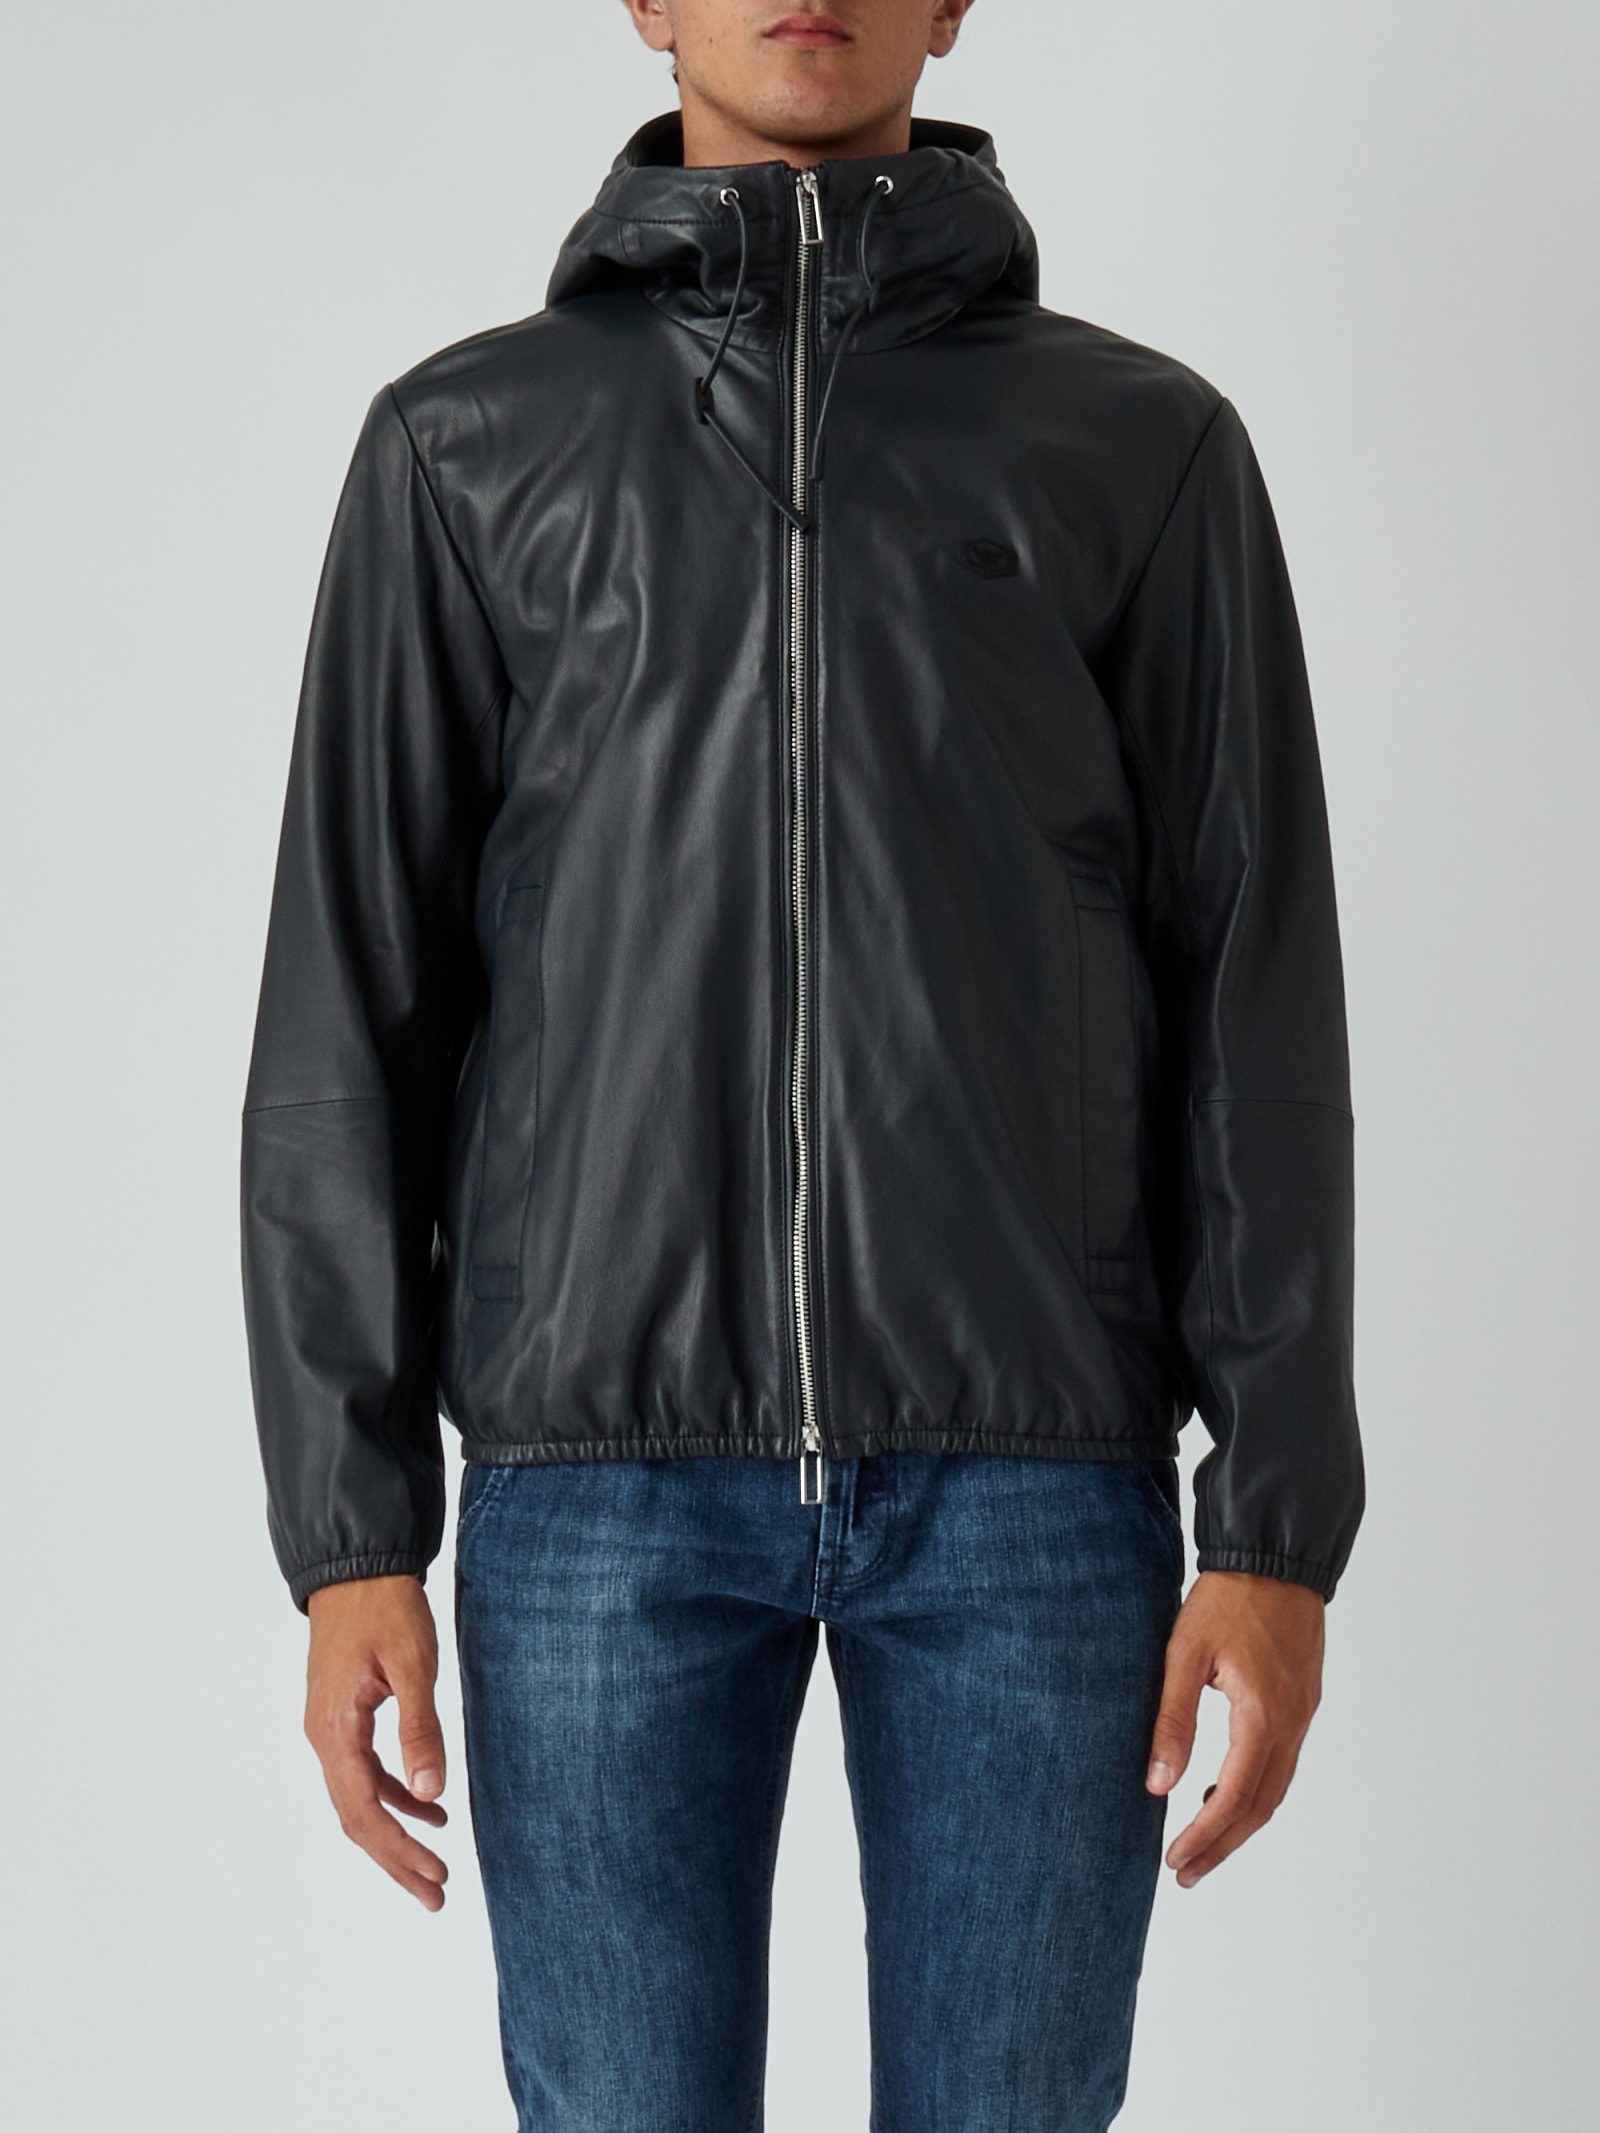 Emporio Armani Man Leather Blouson Jacket Jacket